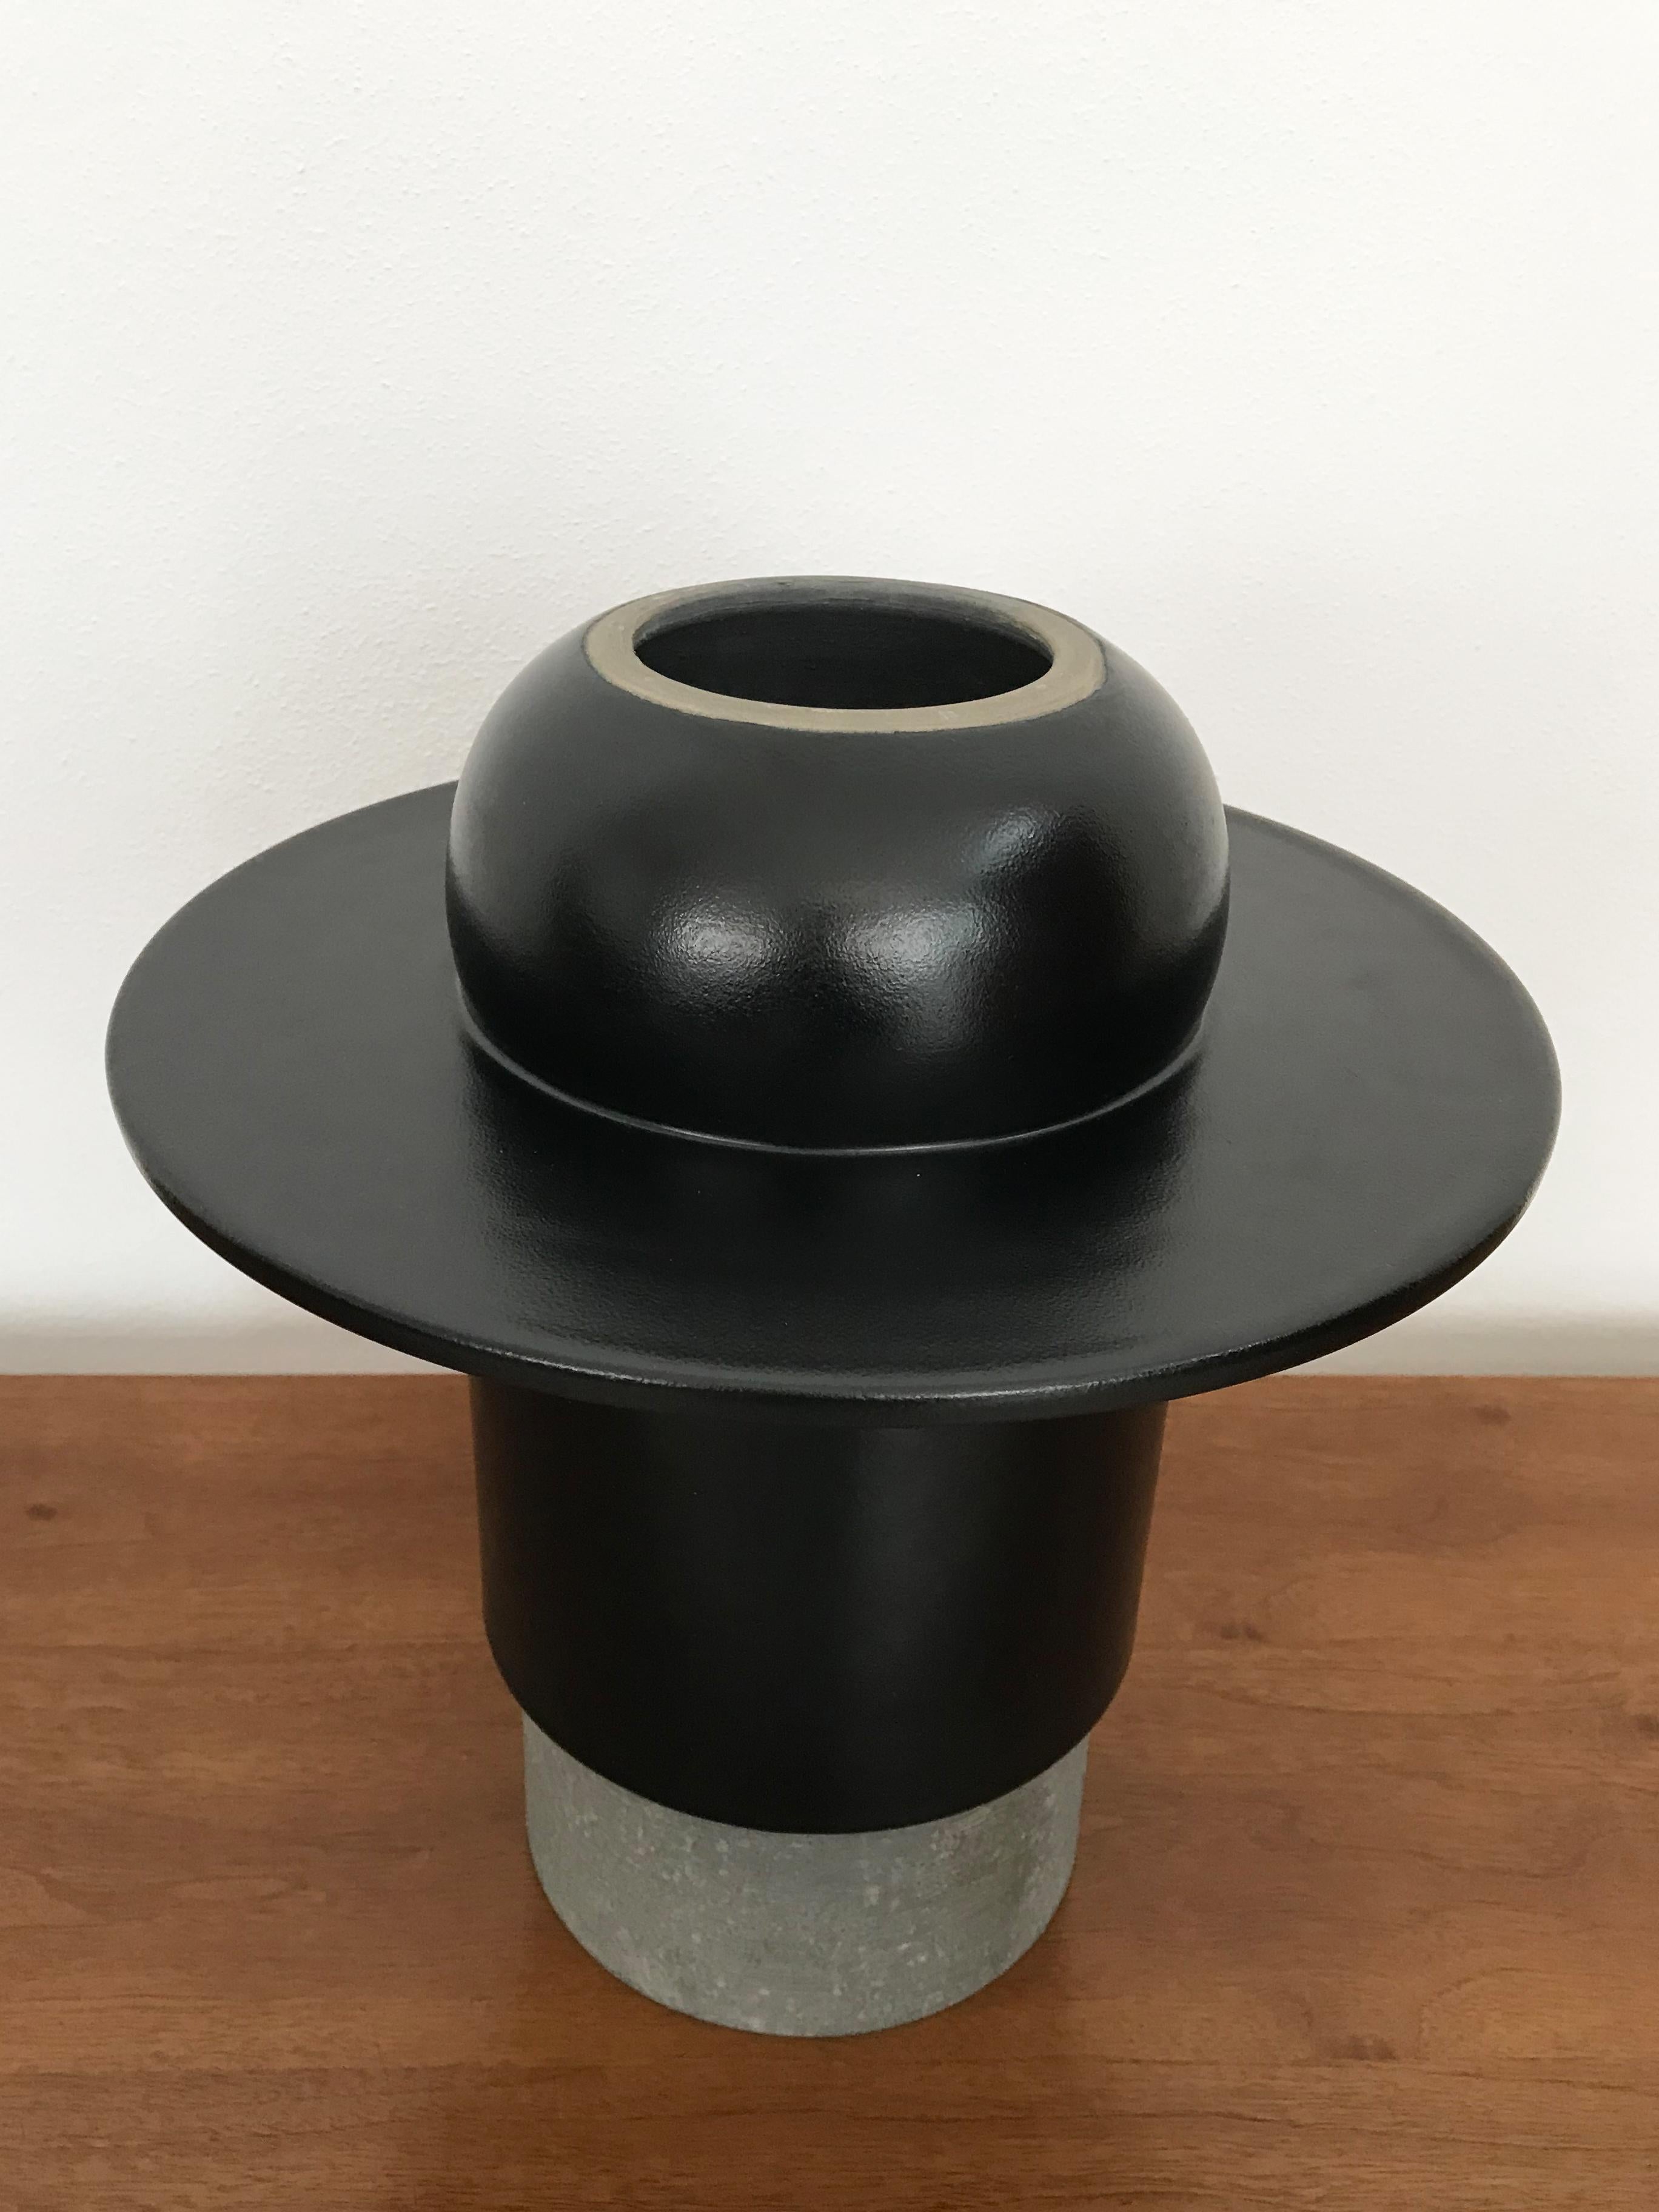 Contemporary Mario Ferrarini for Bitossi Italian Ceramic Vase Sculpture Centerpiece 2010s For Sale